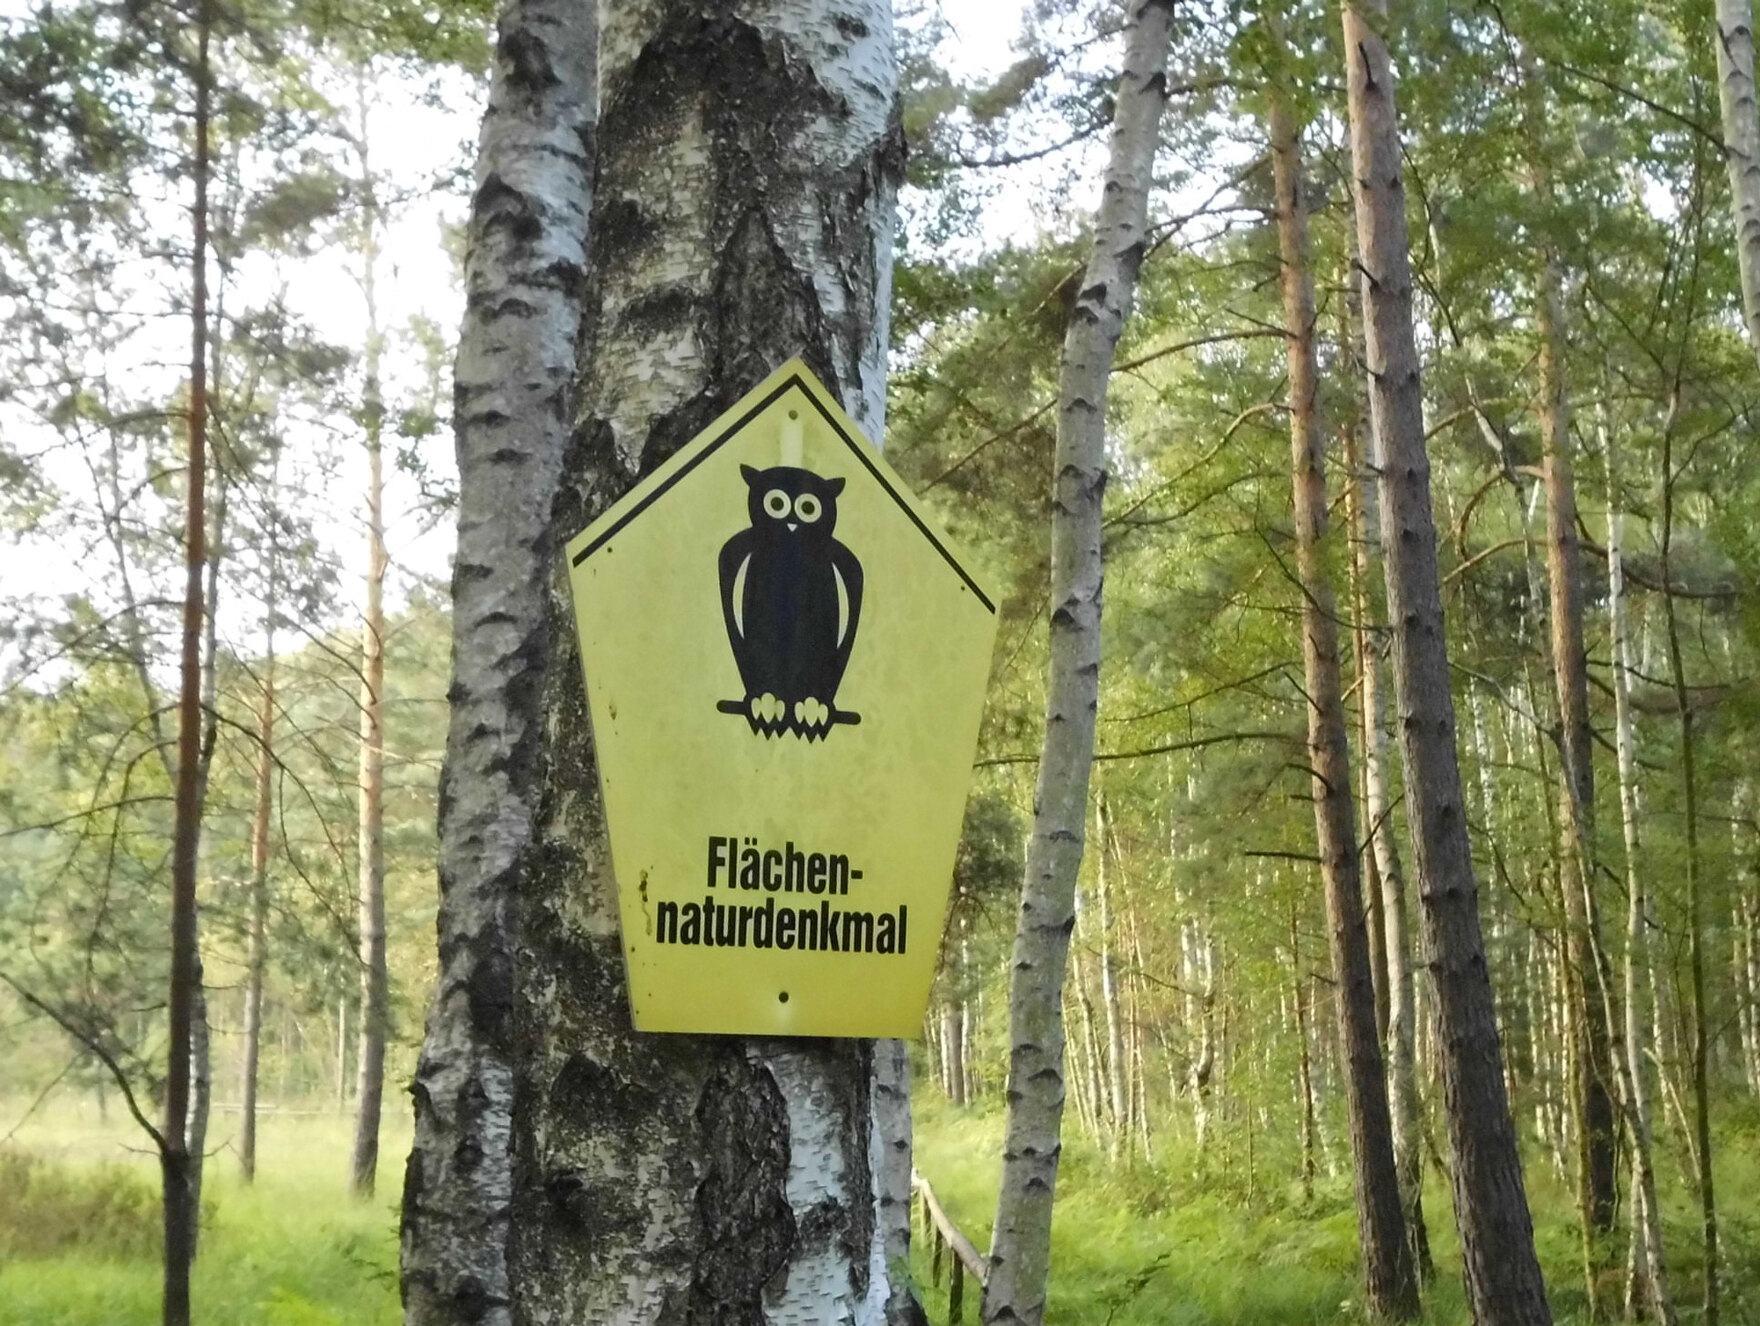 Gelbes Schild mit schwarzer Eule und Aufschrift Flächennaturdenkmal an einem Baum im Wald